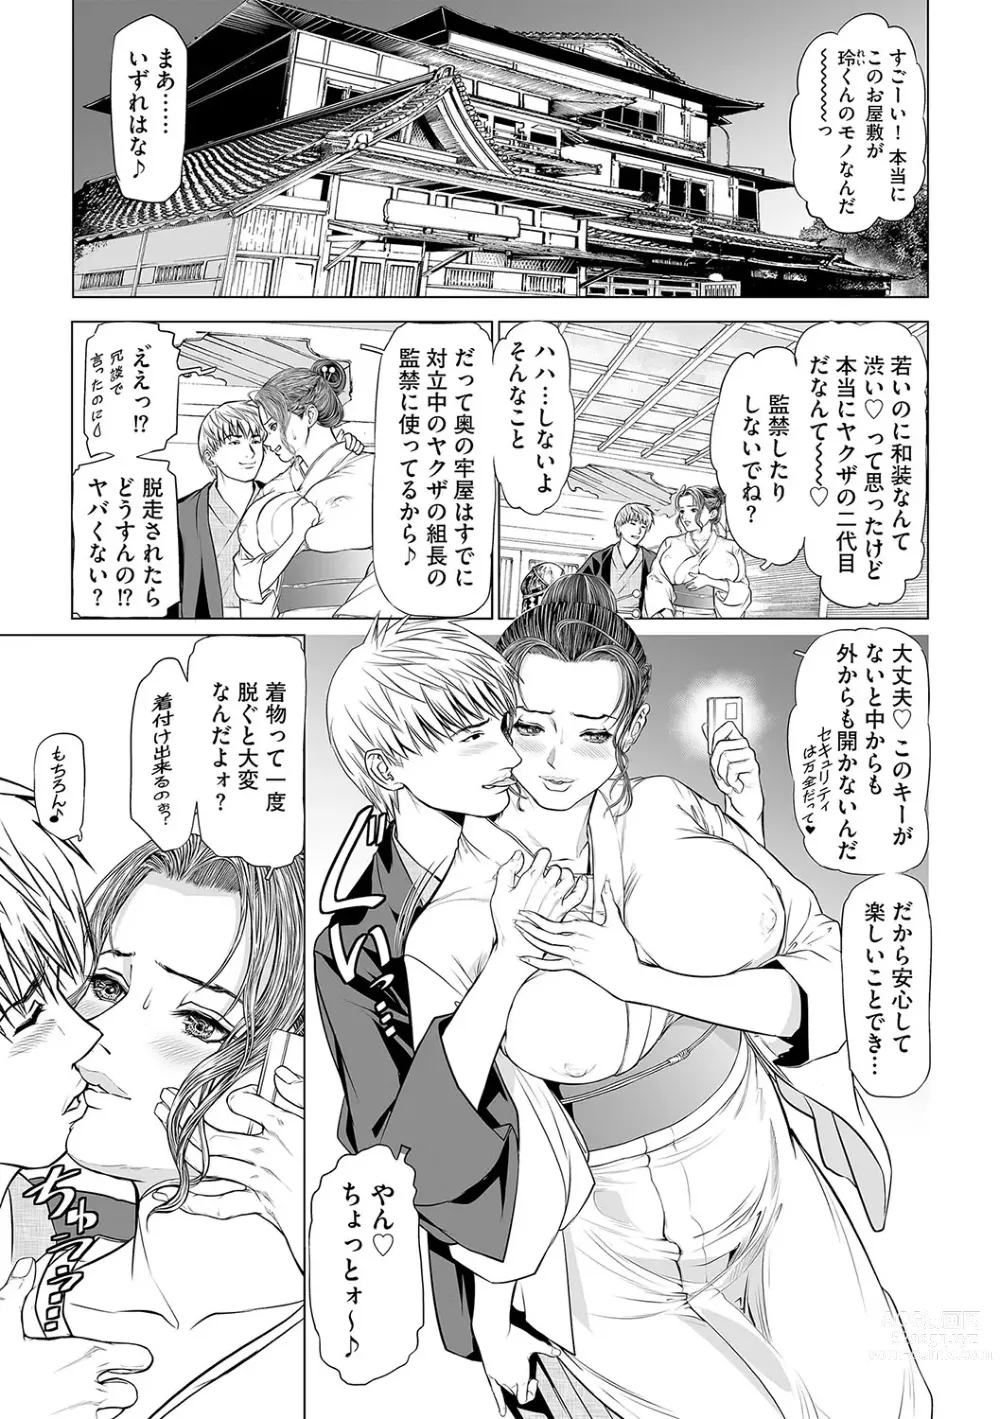 Page 2 of manga INGA Ch. 1